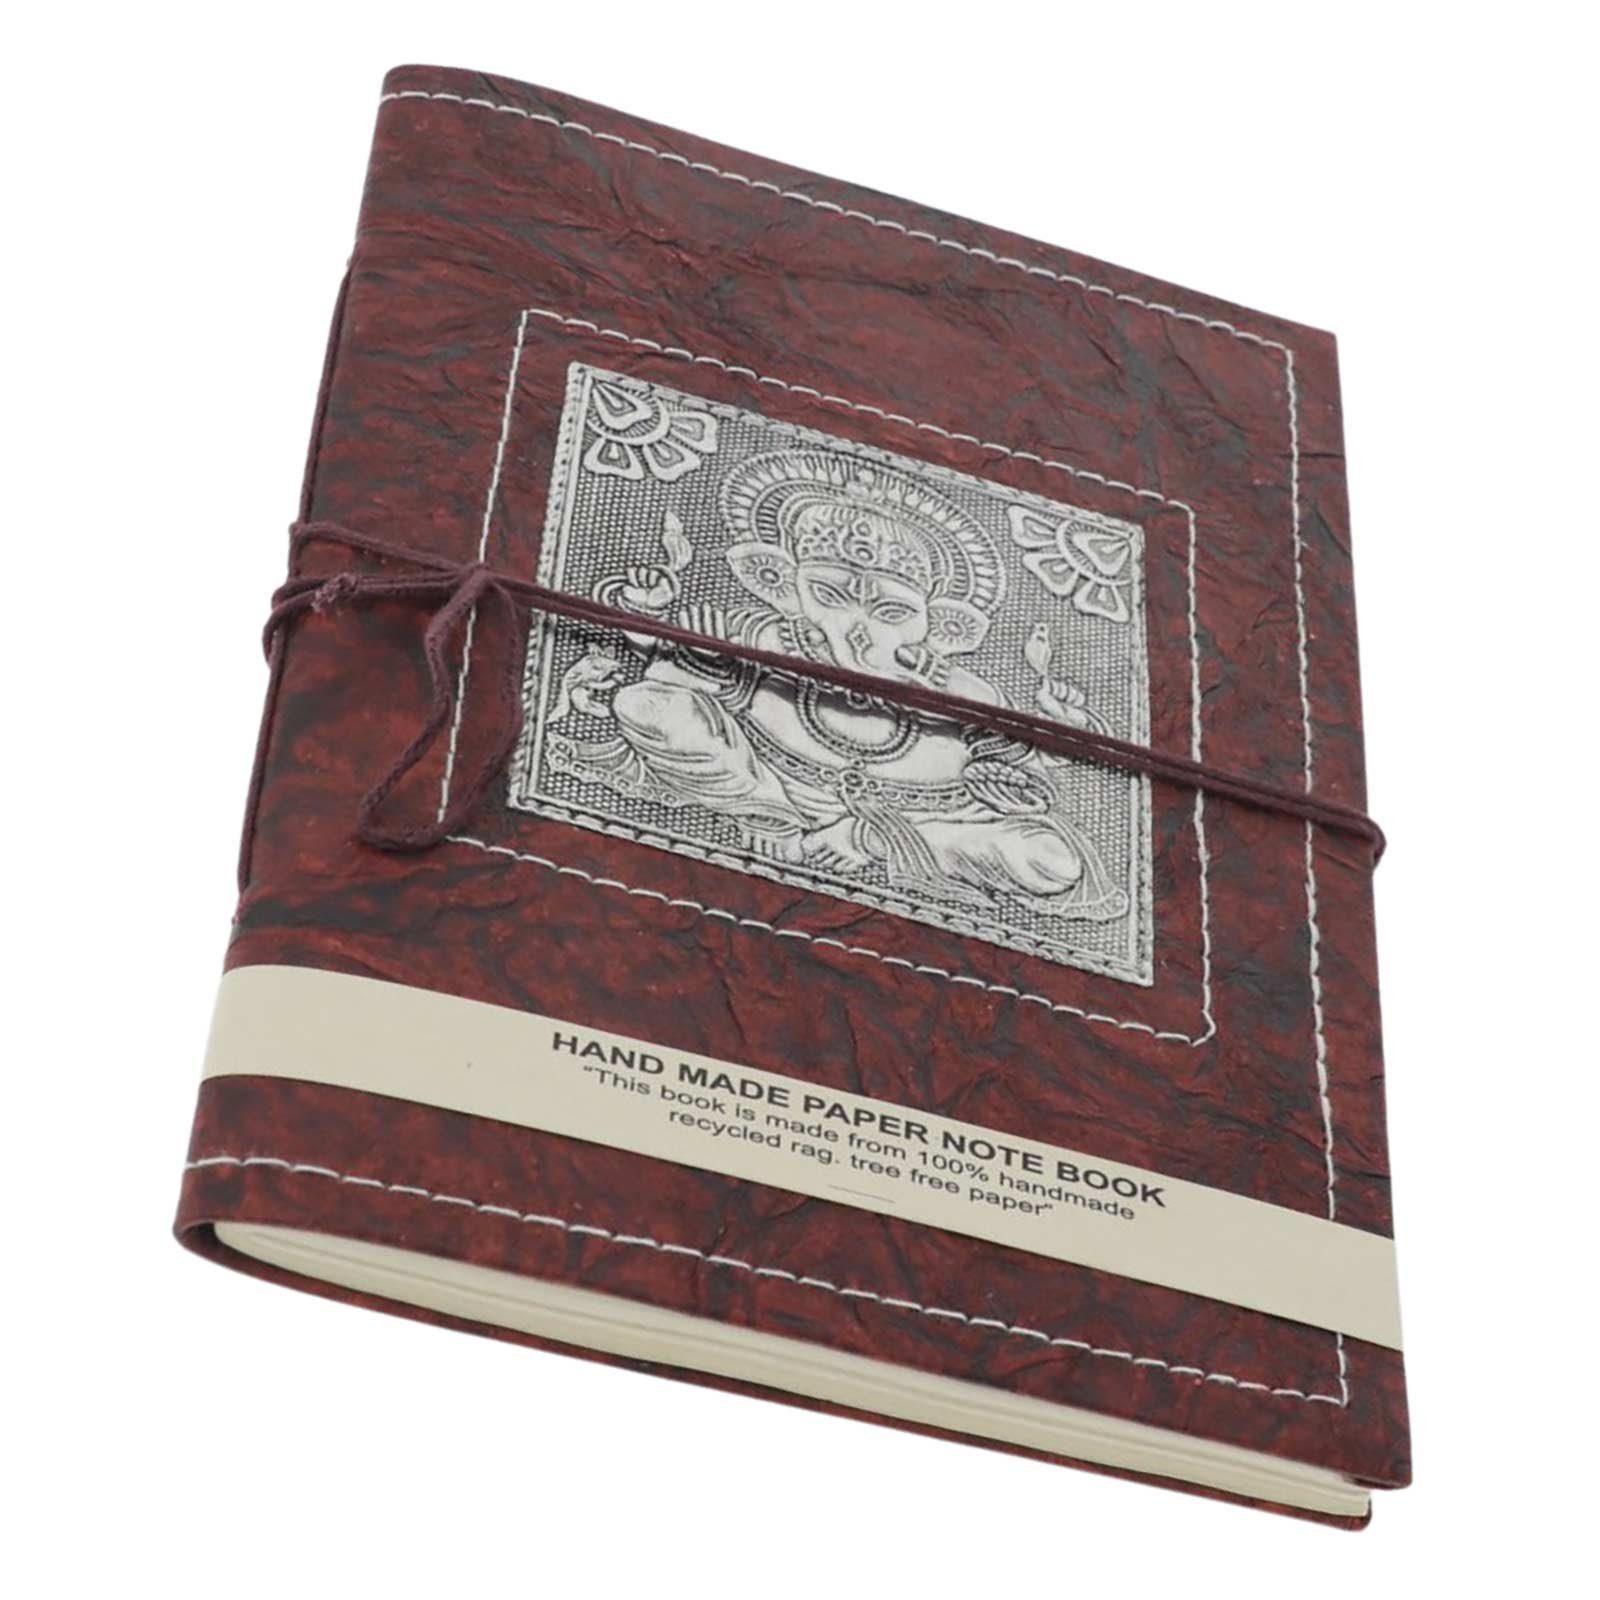 KUNST MAGIE XL Ganesha handgefertigt Tagebuch Poesiealbum 25x18cm Notizbuch Tagebuch UND Lord